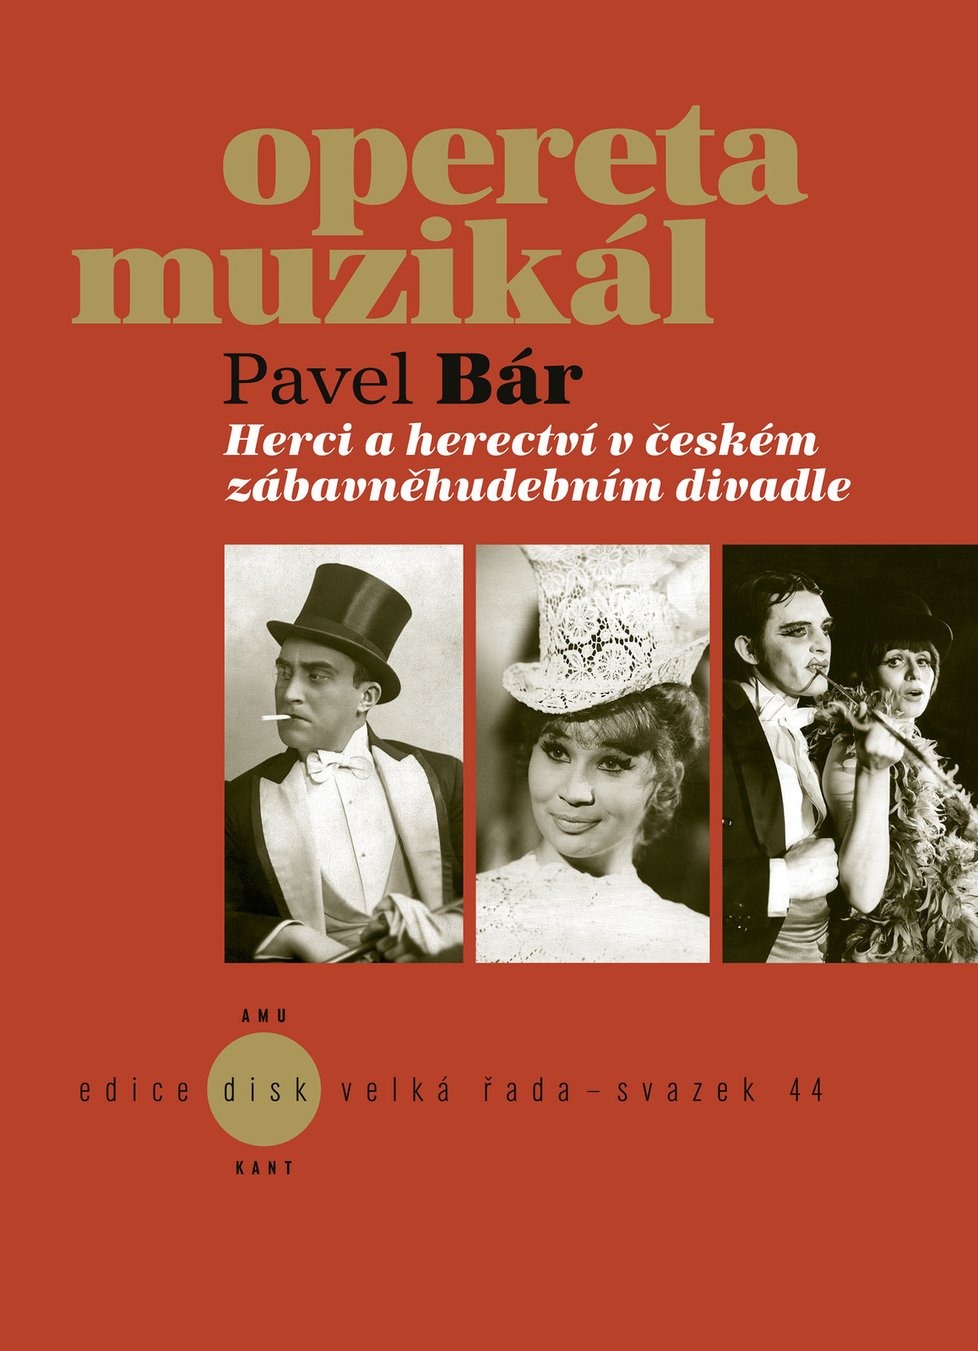 Kniha, ve které Bár popisuje vývoj operety a muzikálu.